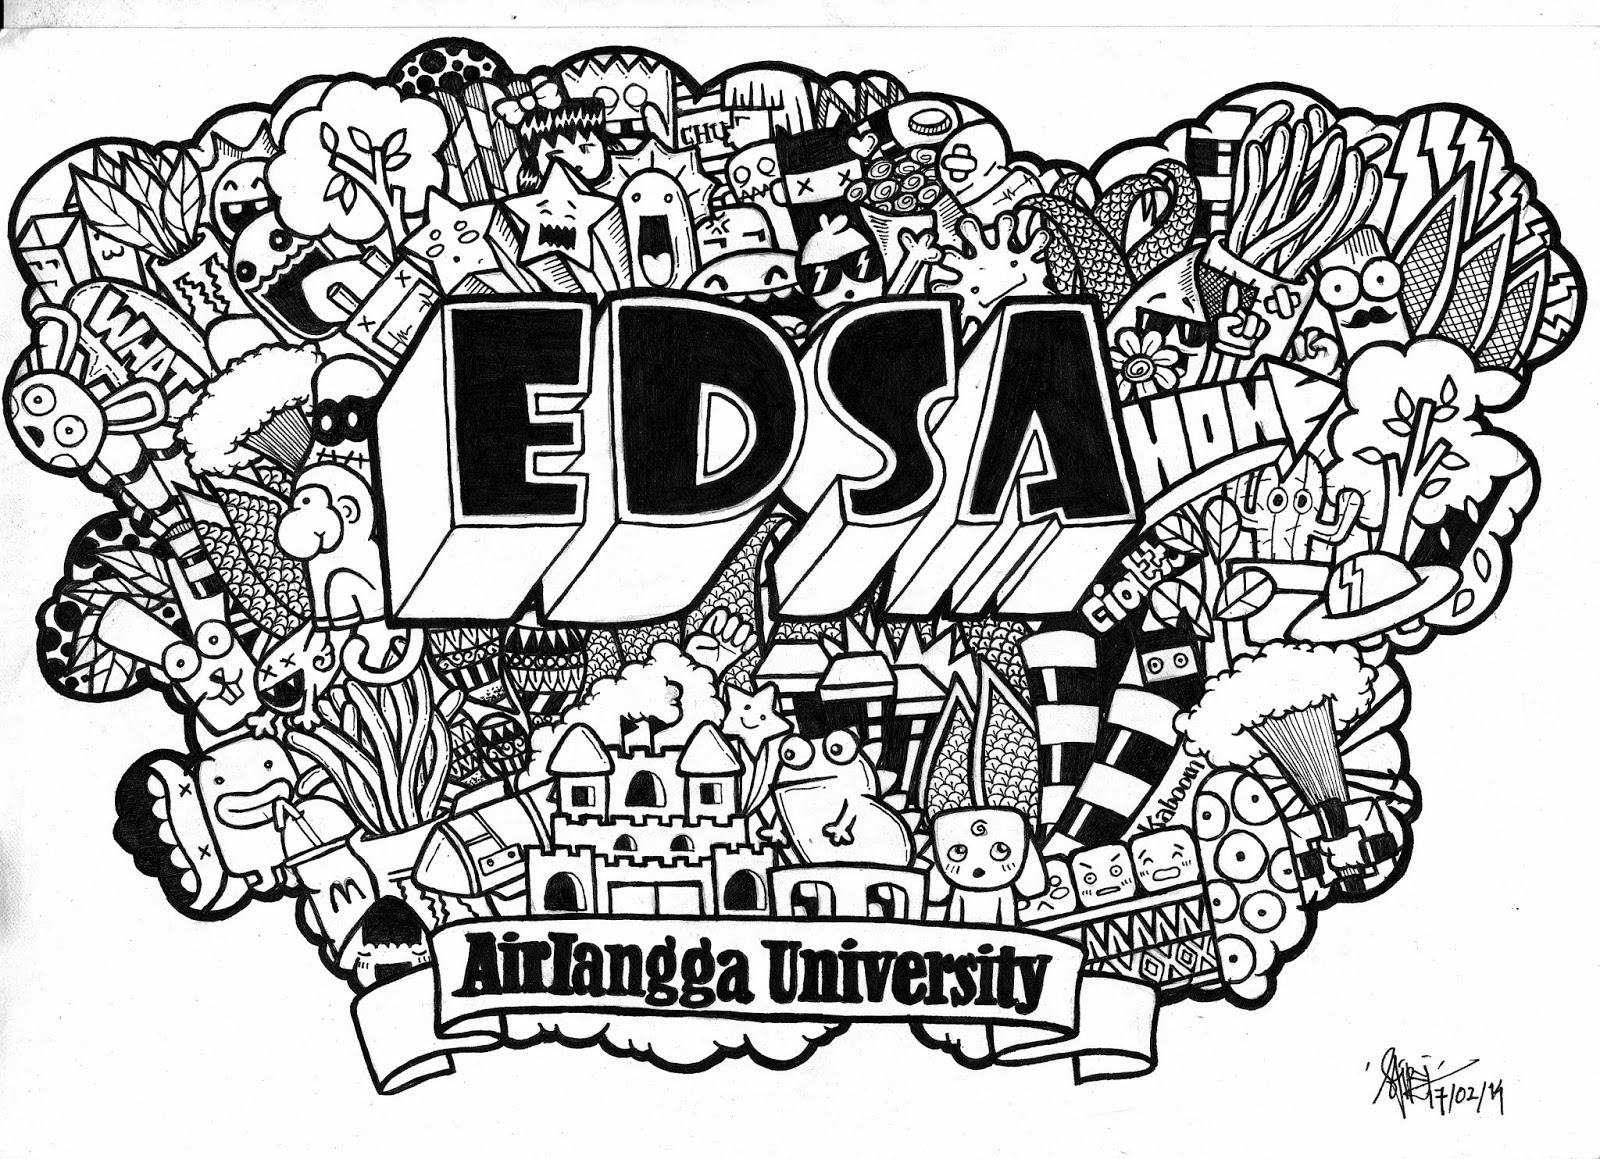 EDSA Unair April 2014